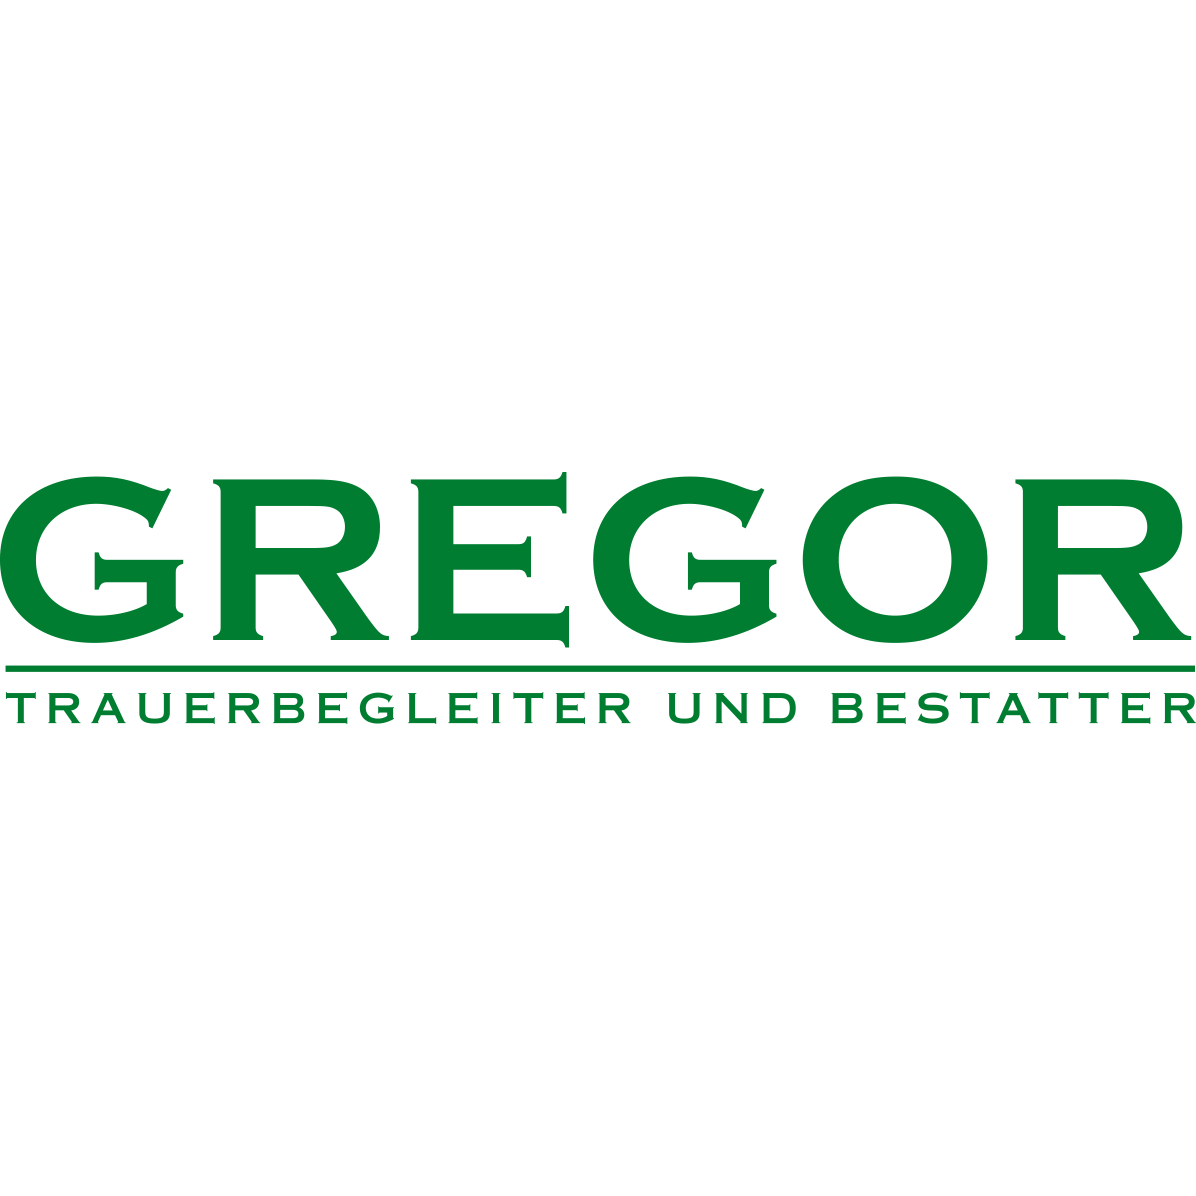 Trauerbegleitung und Bestattung Jürgen Gregor GmbH in Heddesheim in Heddesheim in Baden - Logo